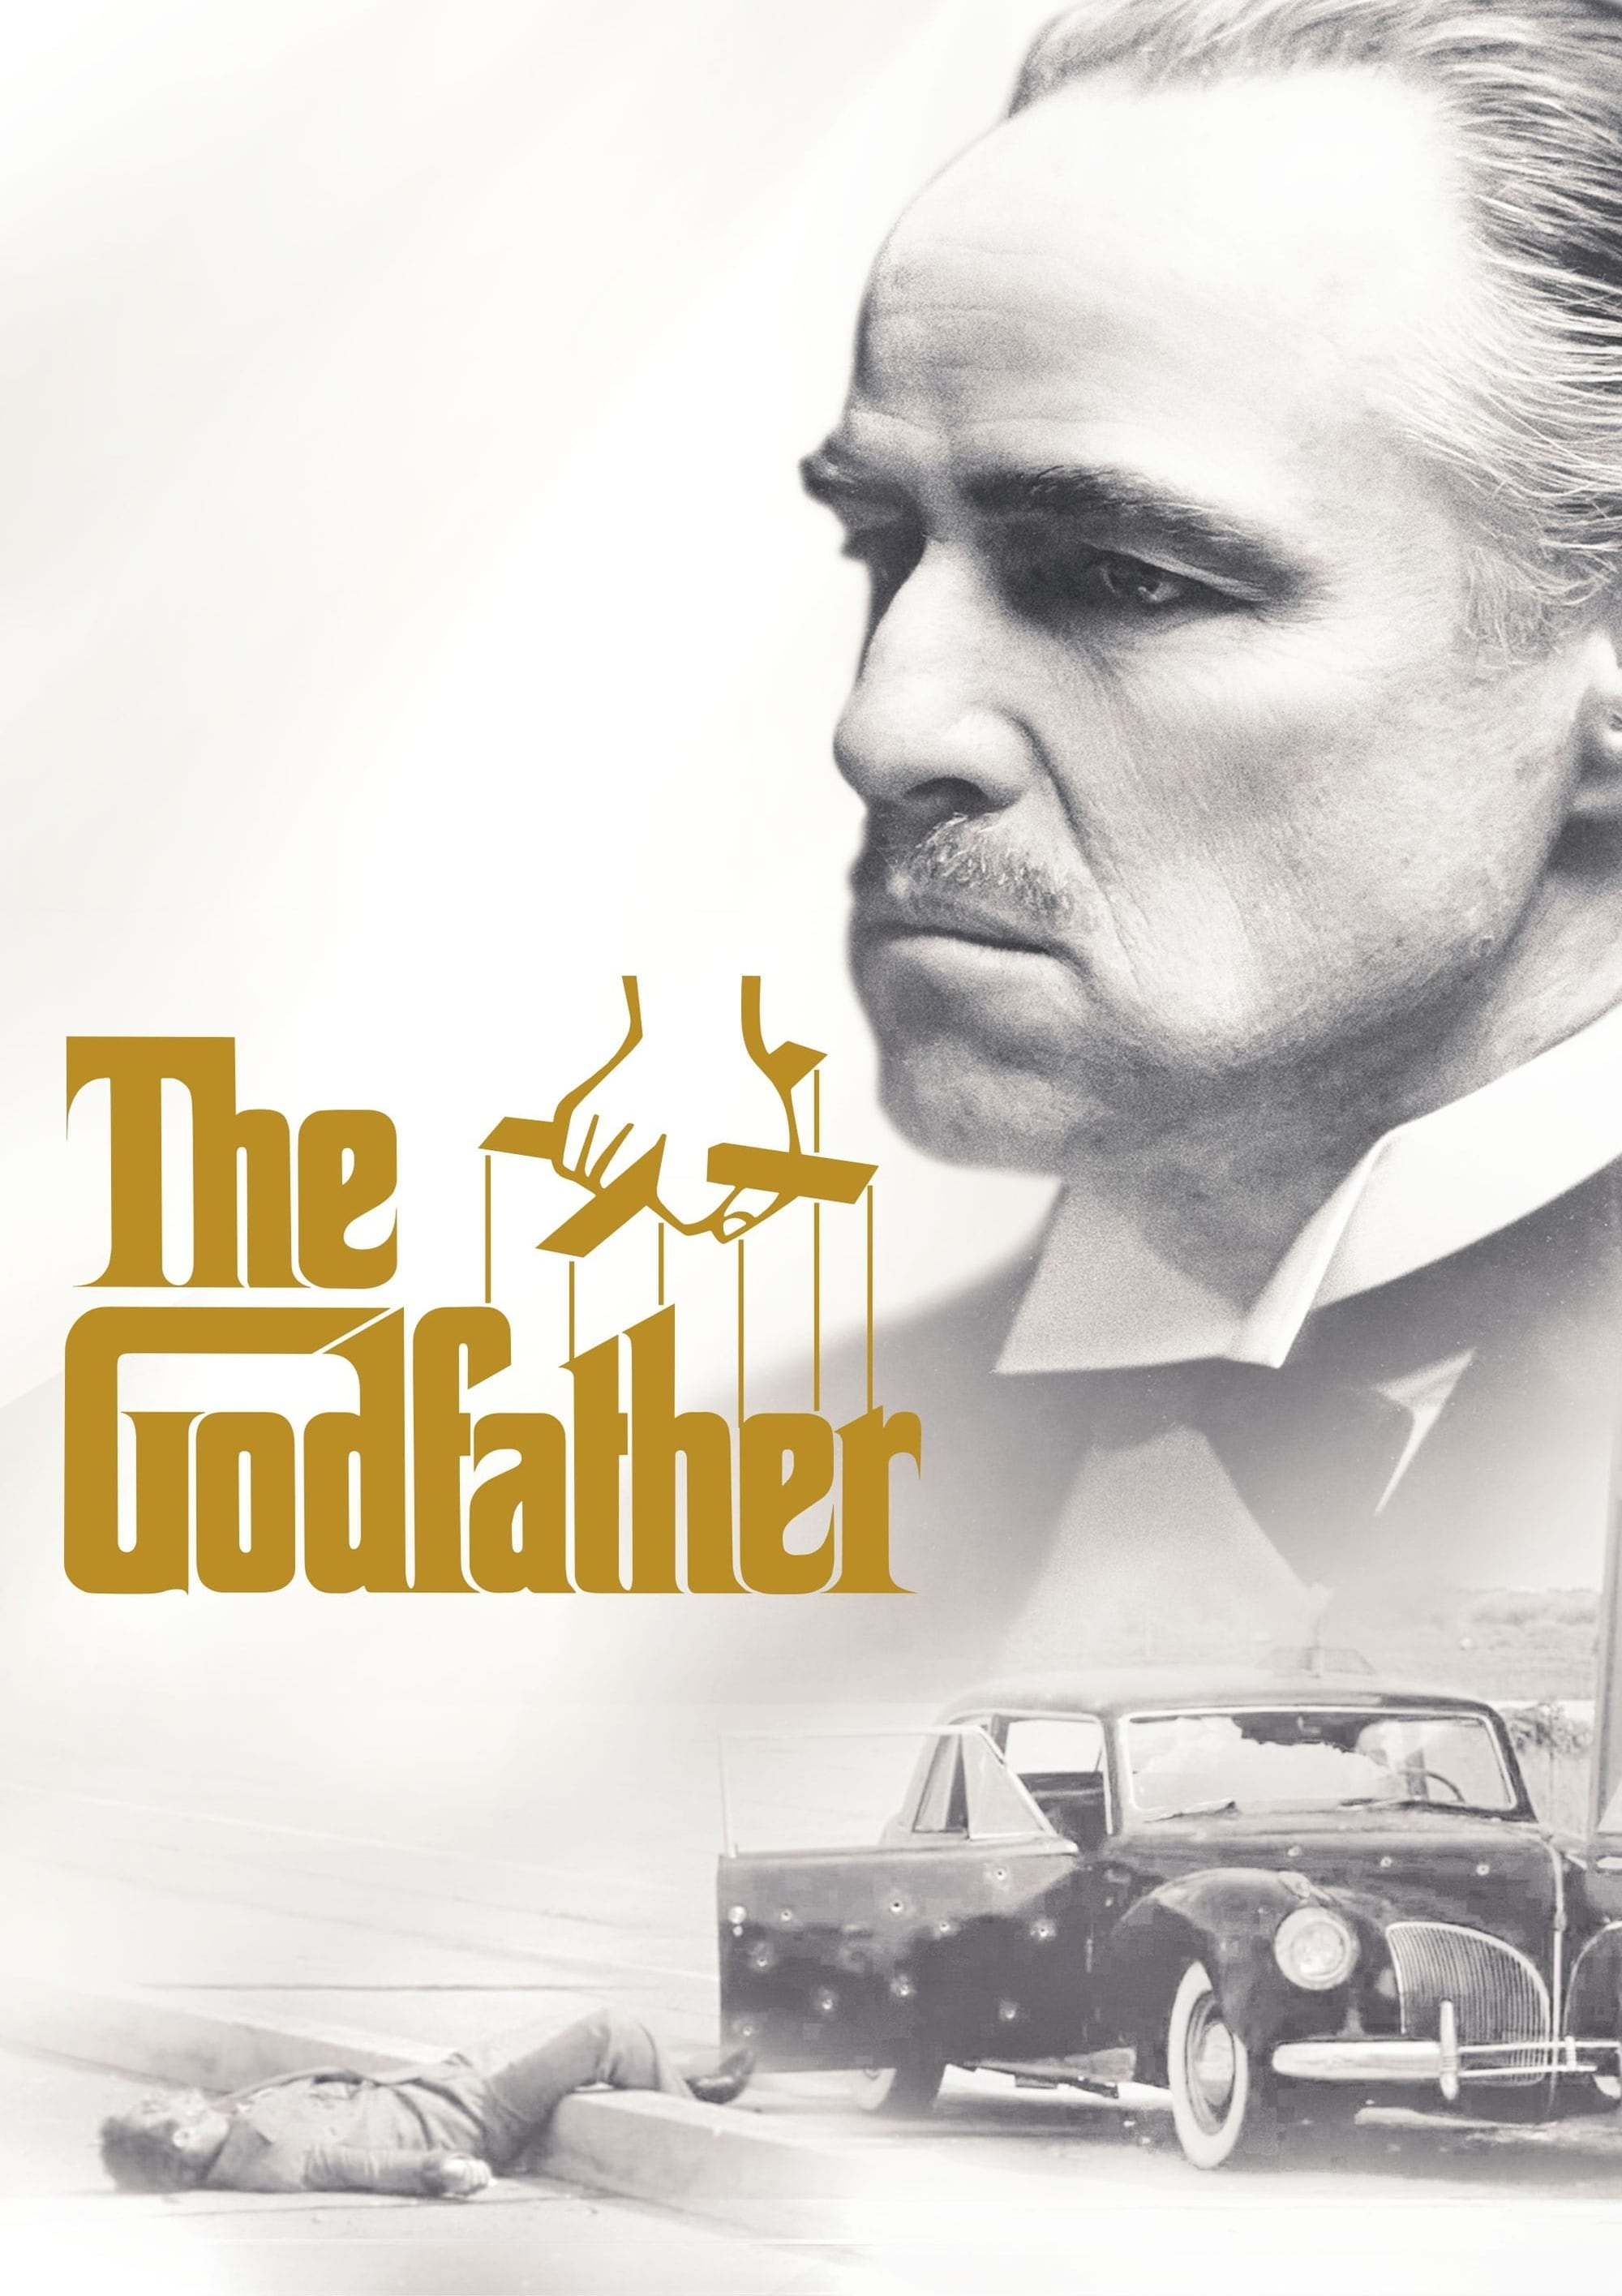 The Godfather Original Classic Retro Art Design Movie Film Poster Print Wall Decor